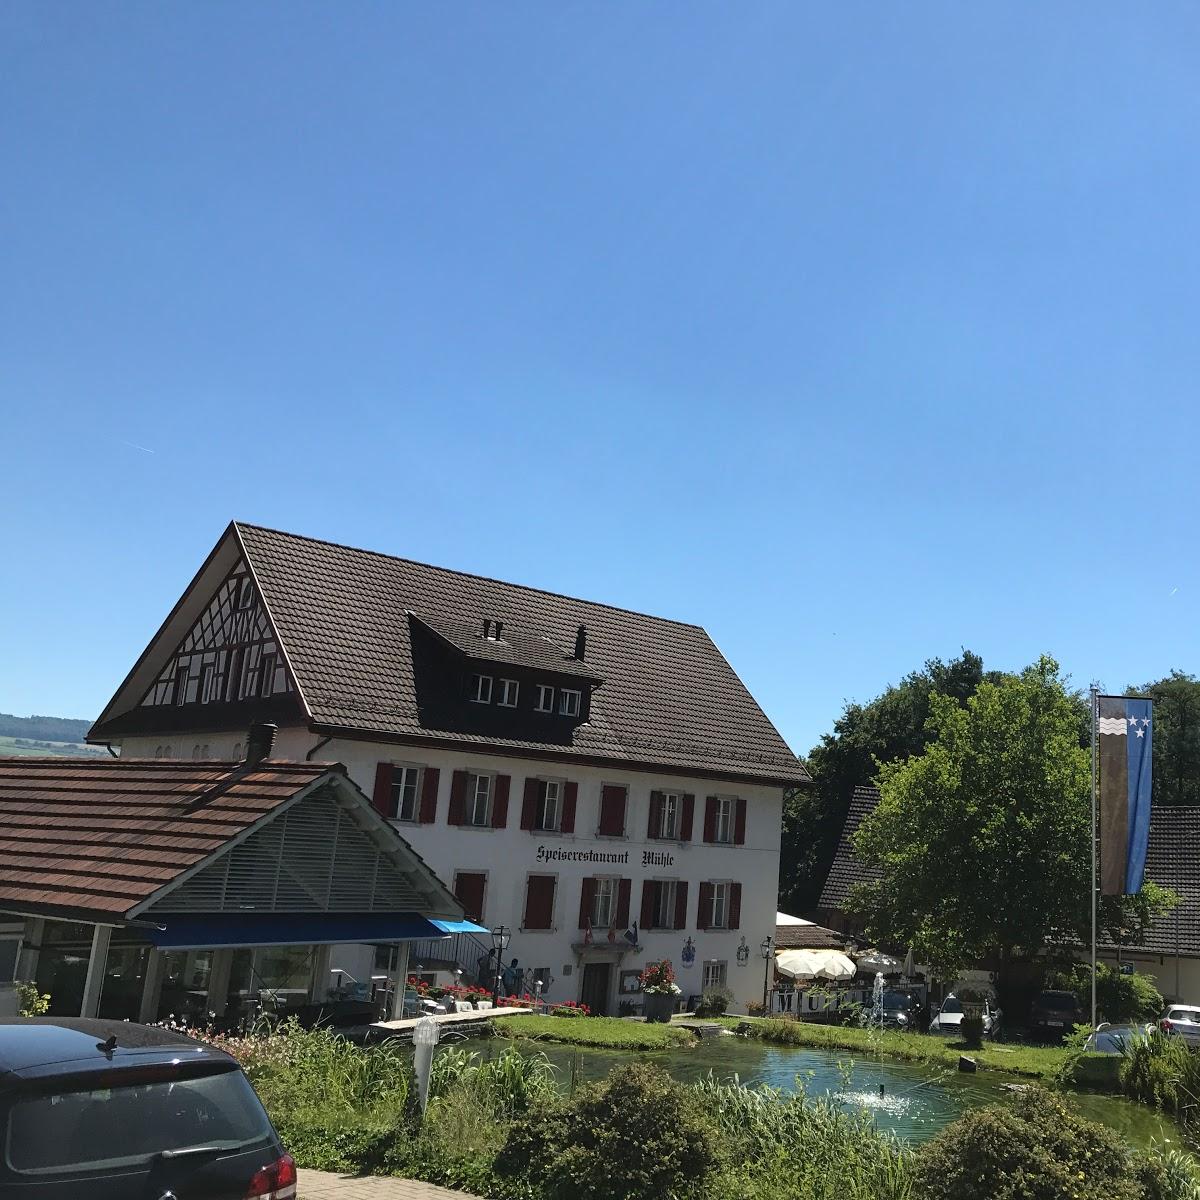 Restaurant "Mühle" in Wohlenschwil